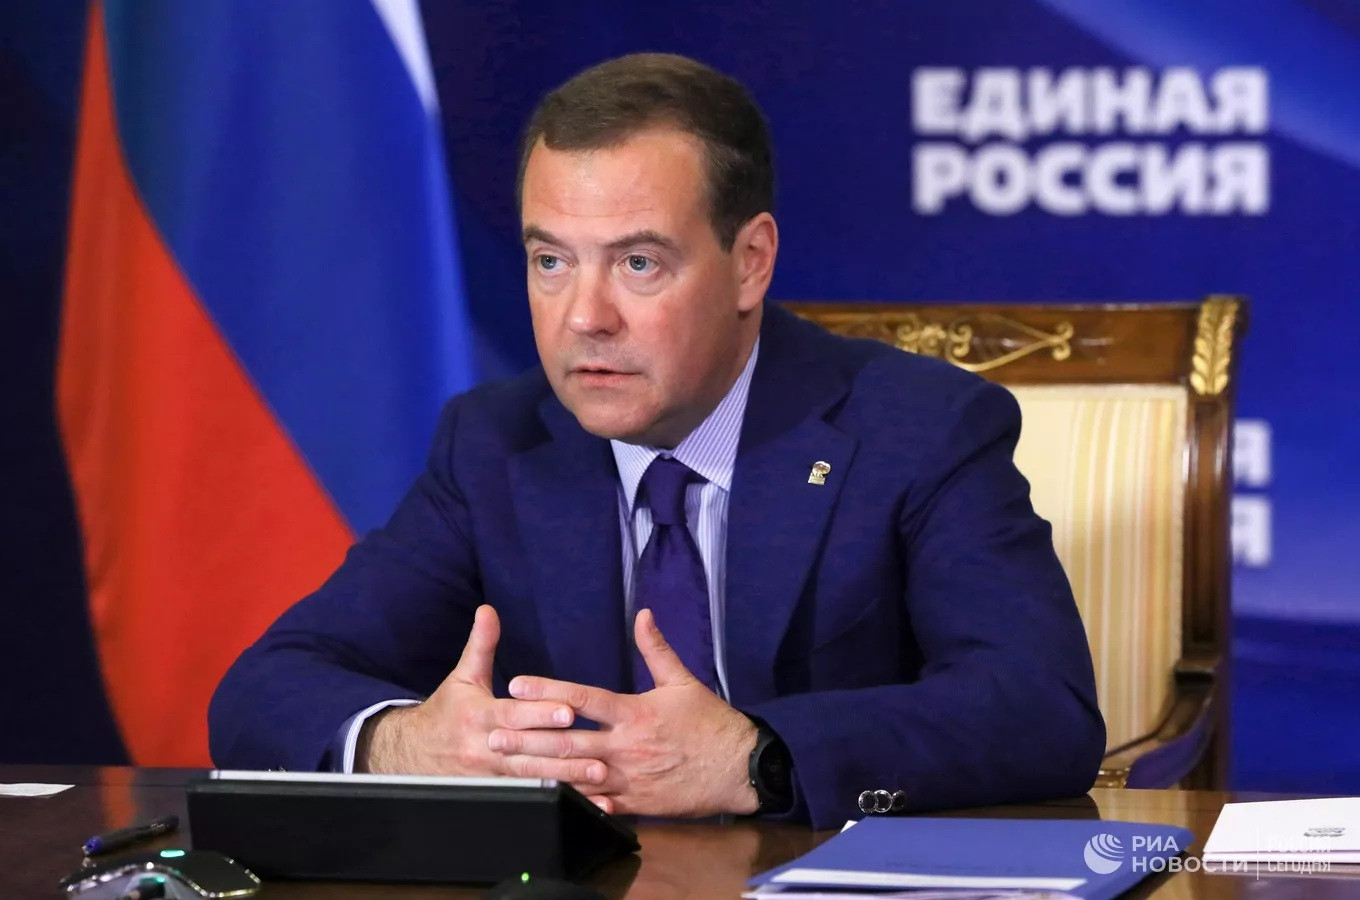 Ông Medvedev nói chiến dịch quân sự đặc biệt bộc lộ một số vấn đề ở Nga